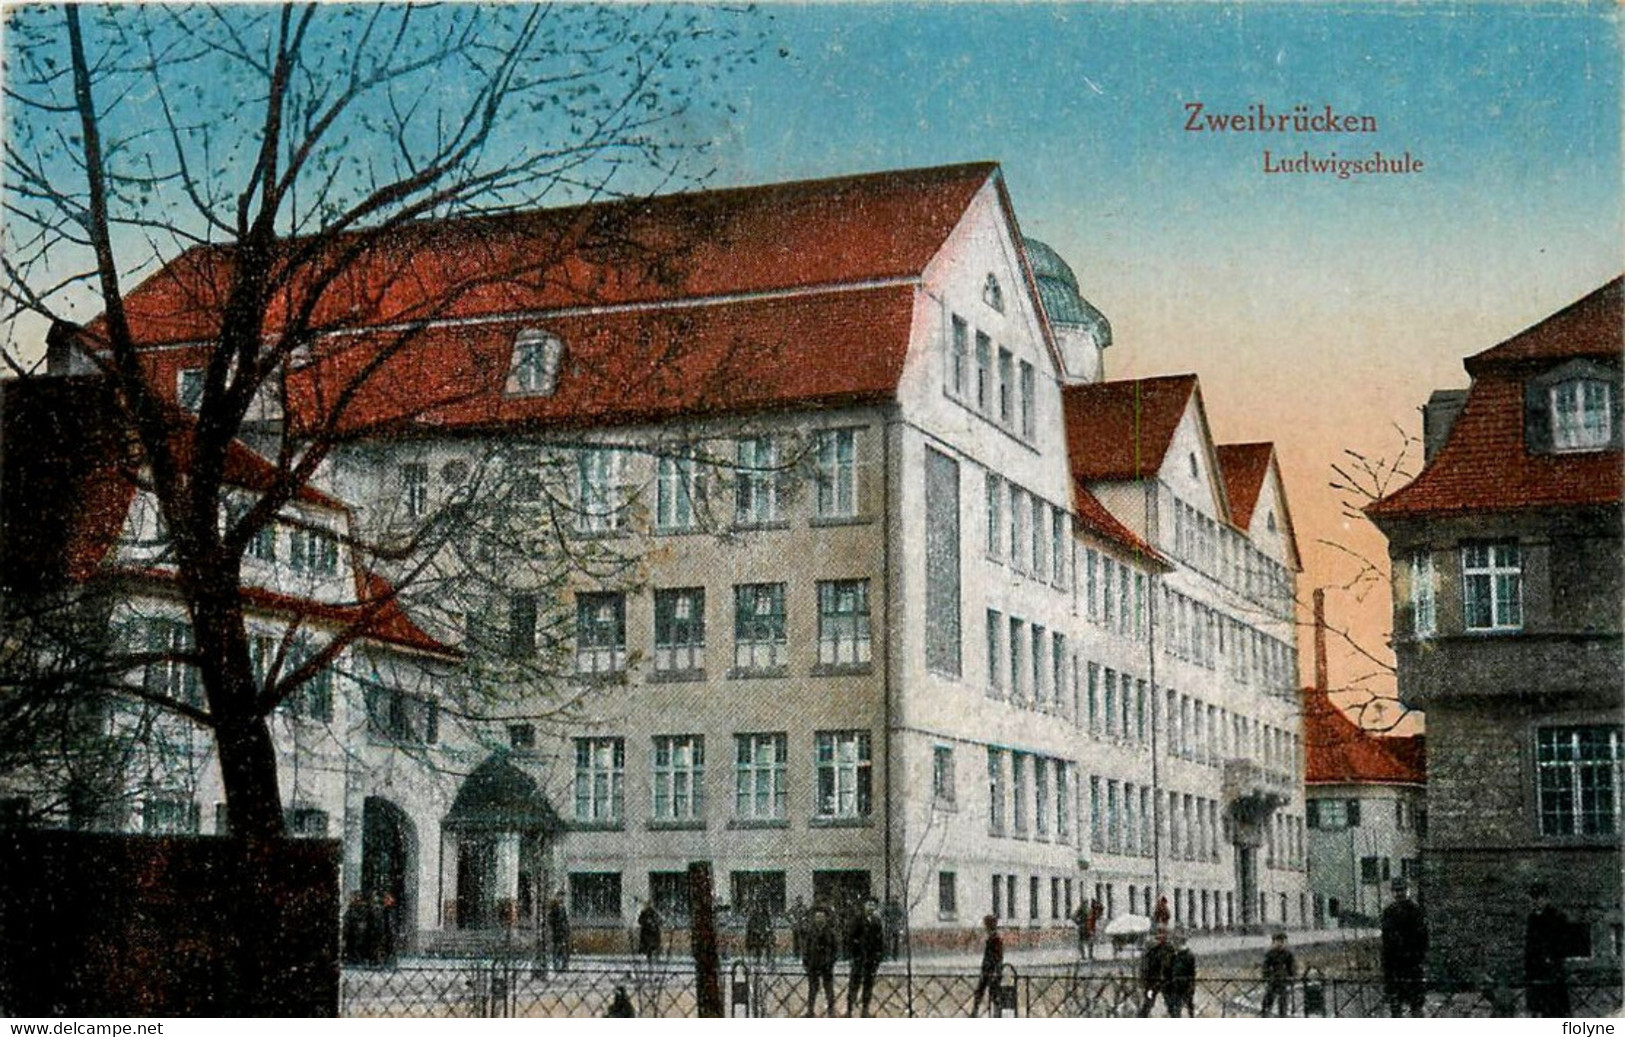 Zweibruecken - Zweibrücken - Deux Ponts - Ludwigschule - école School - Allemagne Germany - Zweibruecken